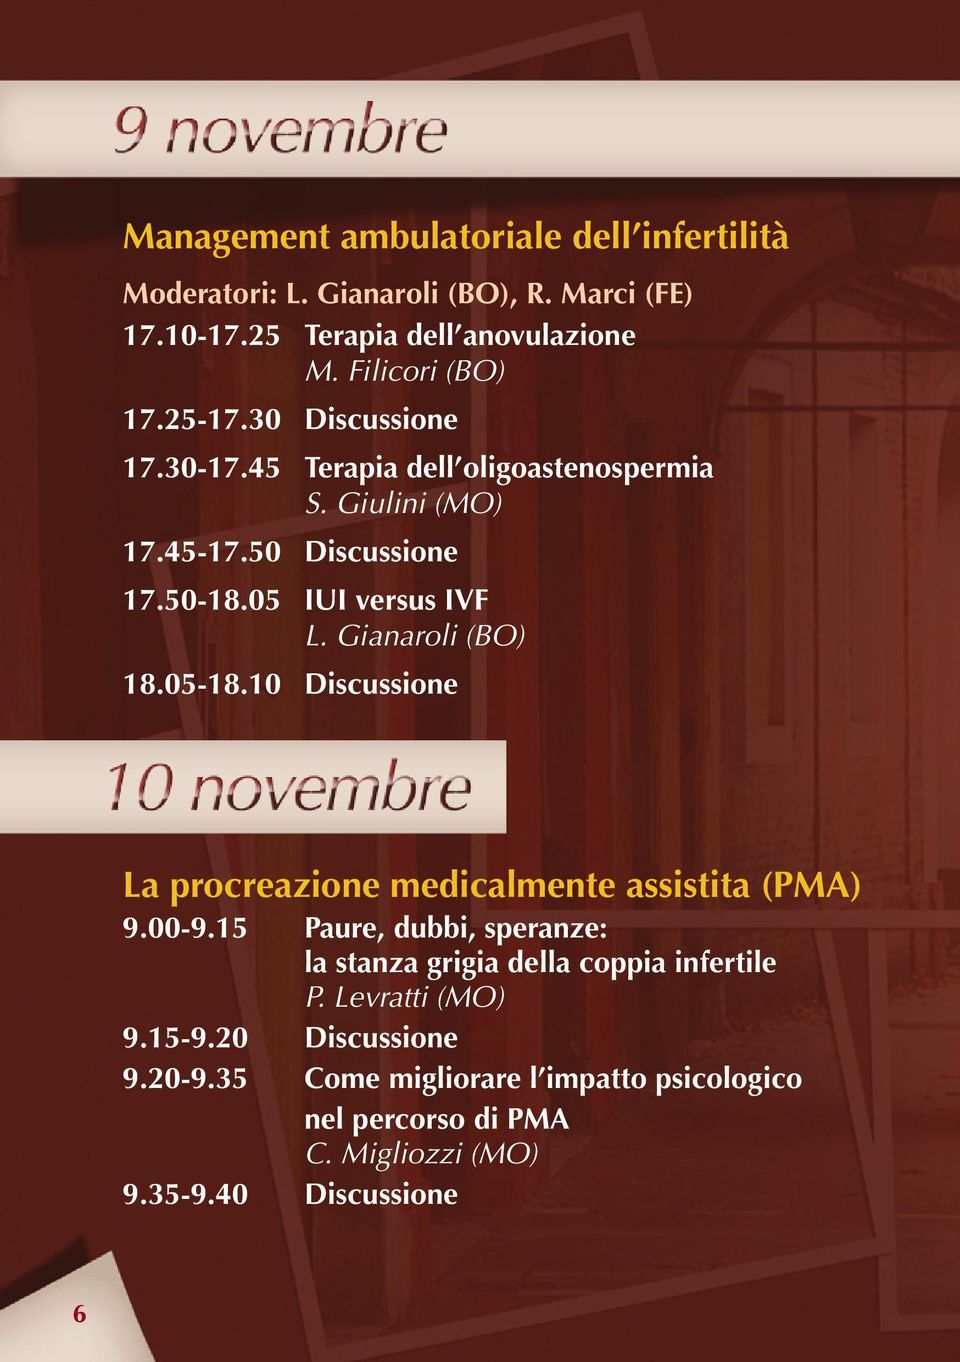 Gianaroli (BO) 18.05-18.10 Discussione La procreazione medicalmente assistita (PMA) 9.00-9.